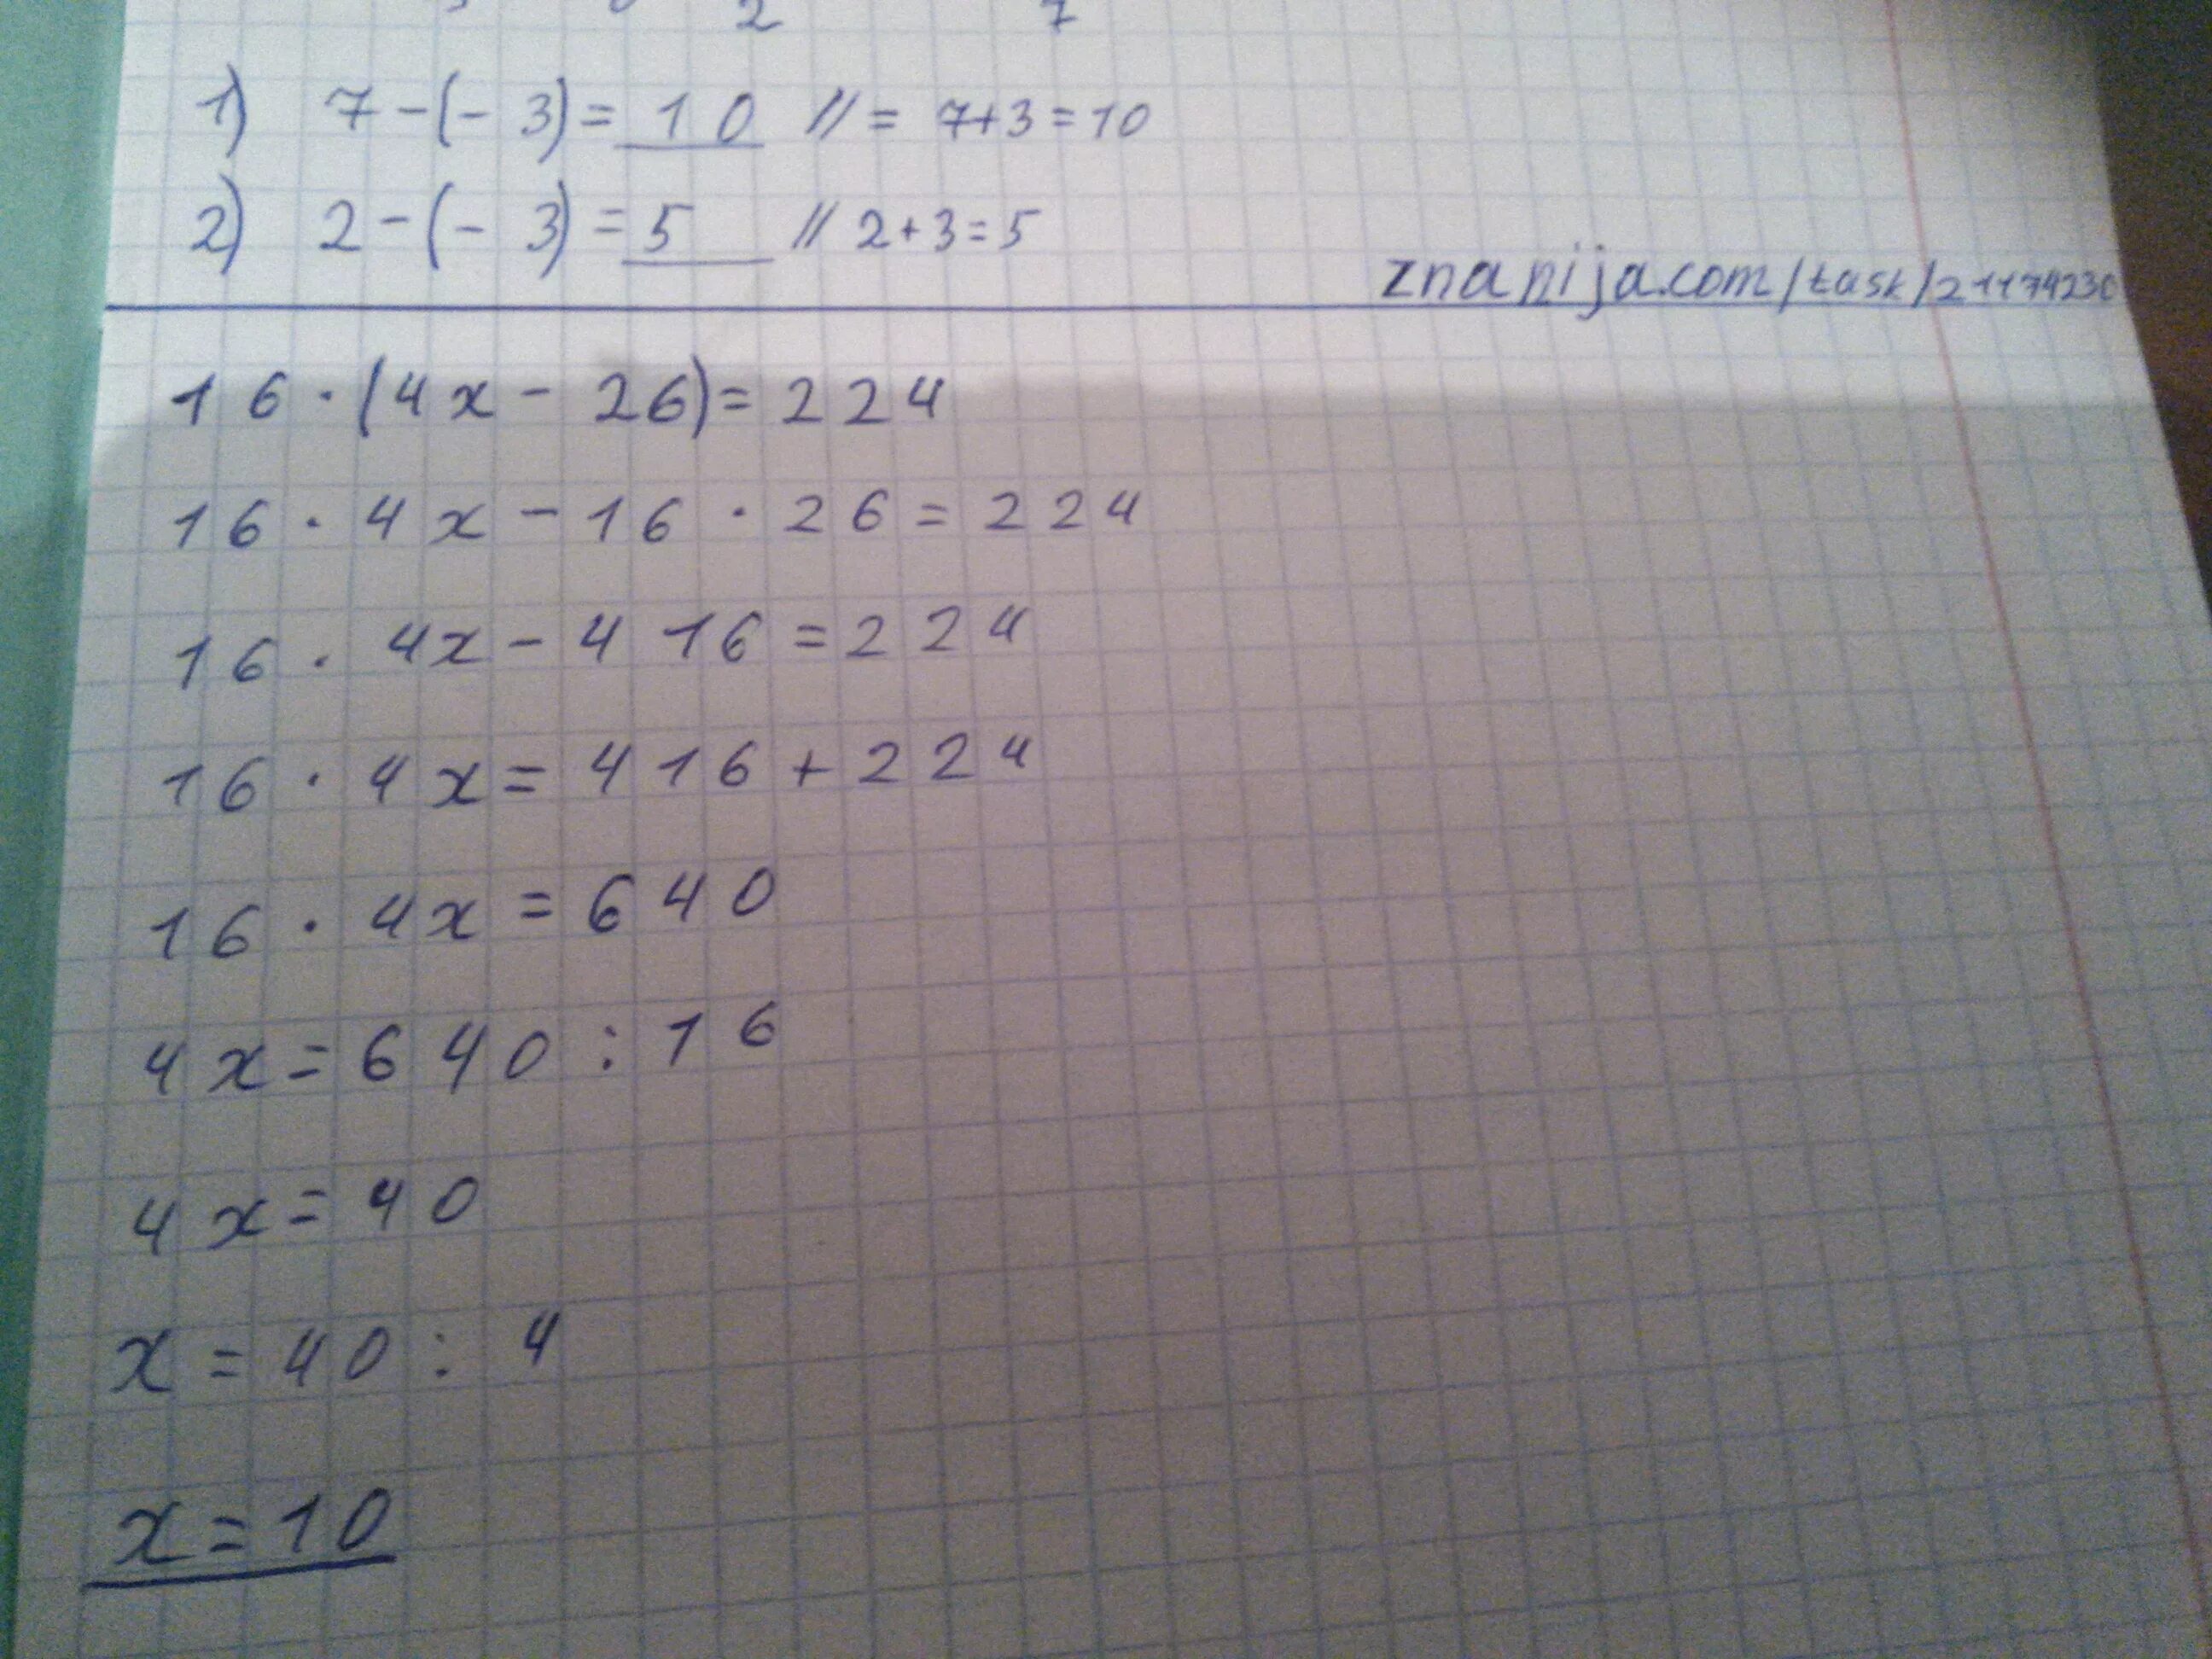 1 3 9 16 решение. 16(4х-26)=224. (4×Х+26):7=14. Решить уравнение 16 4x-26) 224. 16(4х-26)=224 математика 5 класс m.